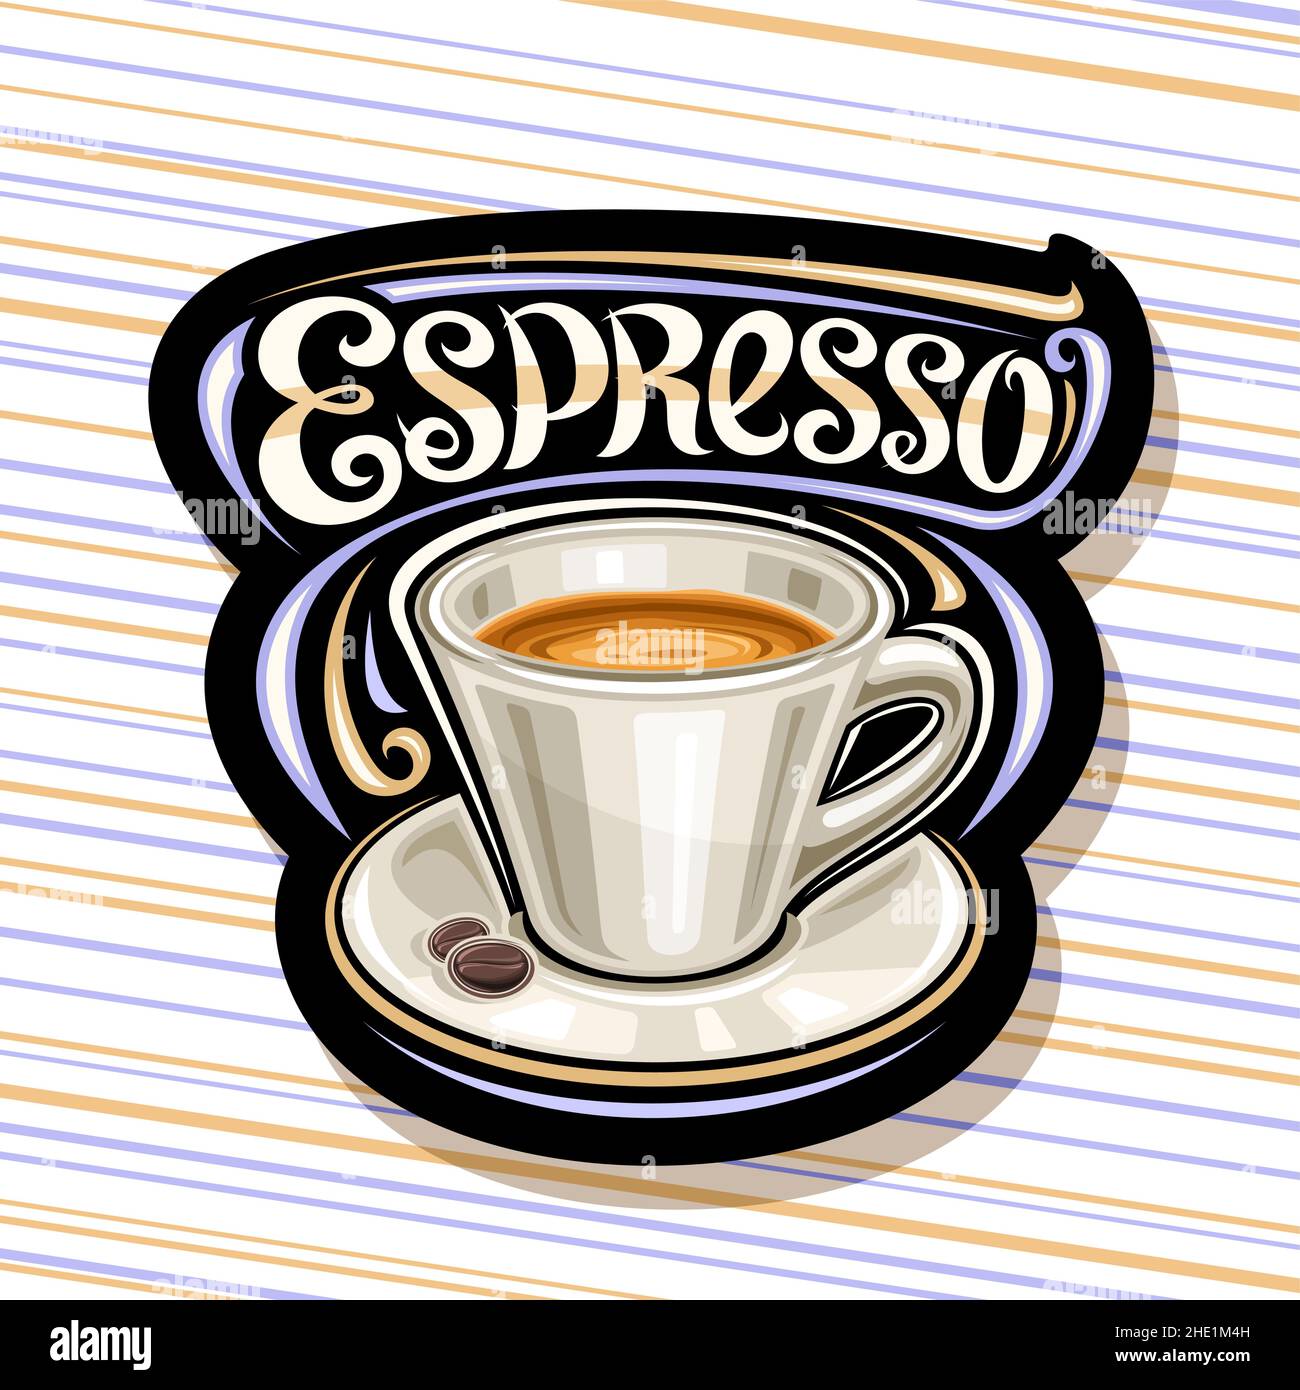 Logo Vector pour Espresso Coffee, illustration d'une tasse en céramique avec boisson au café et grains rôtis sur l'assiette, panneau décoratif avec bru unique Illustration de Vecteur